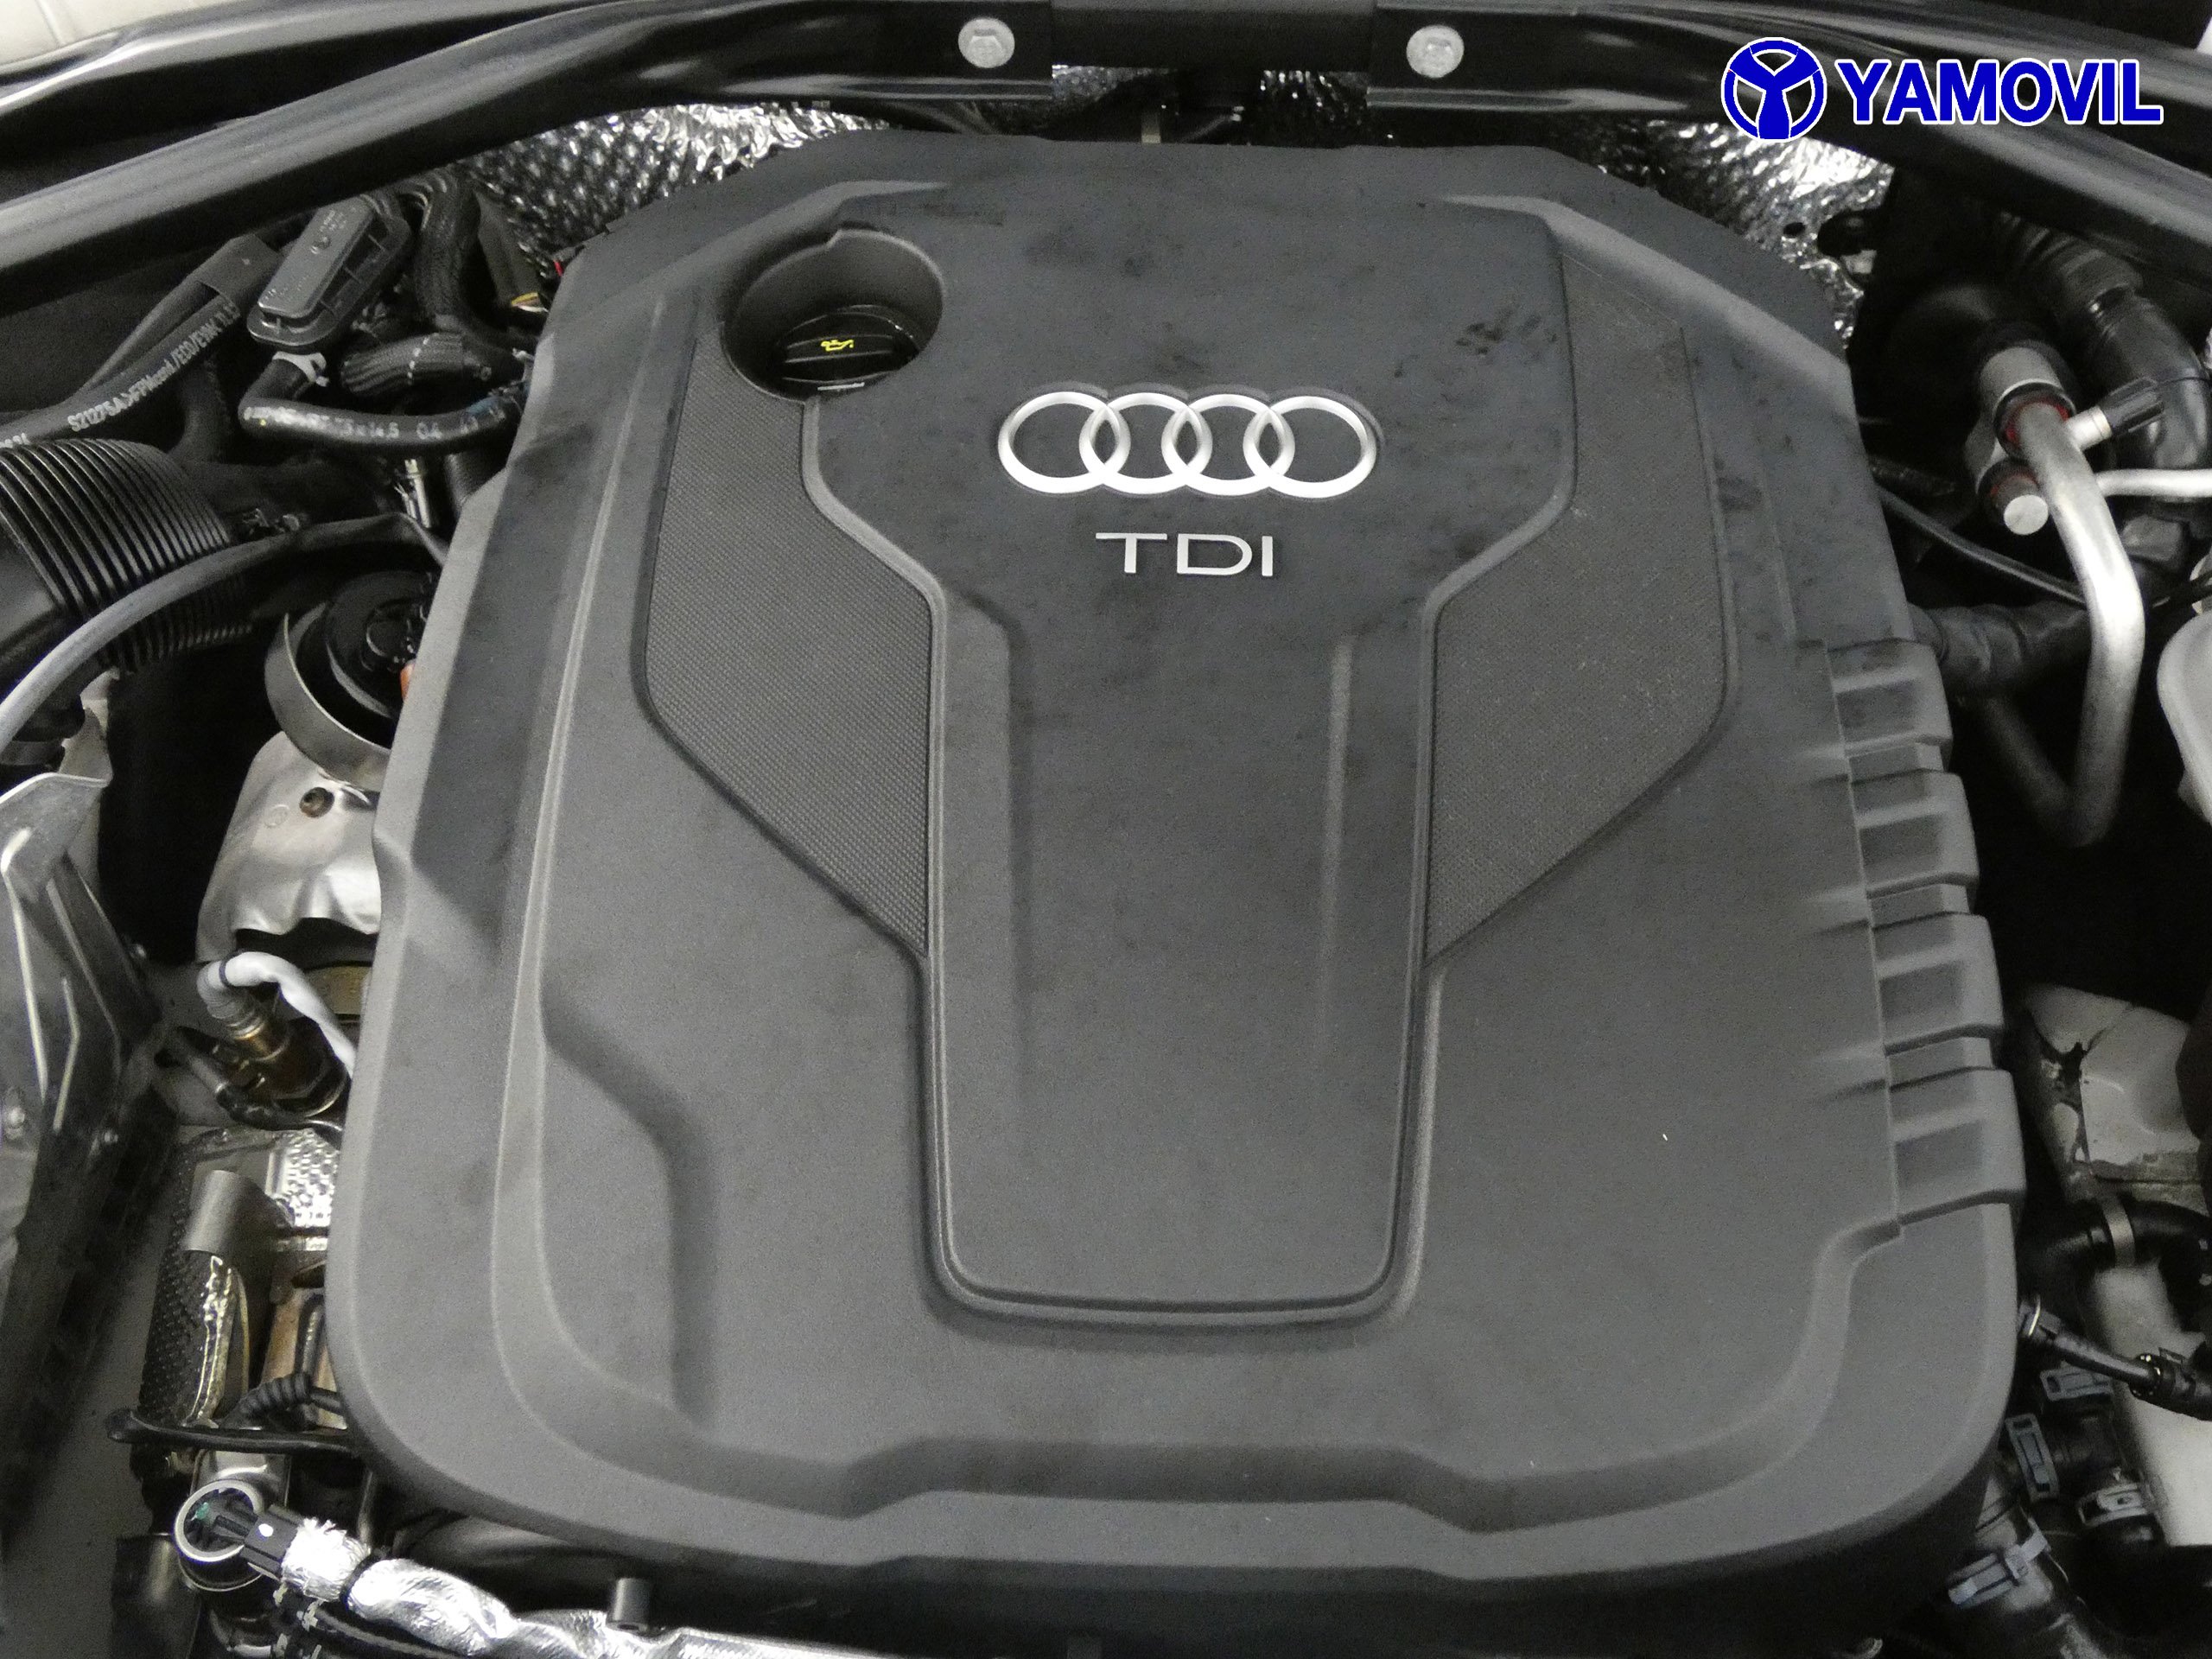 Audi Q5 2.0 TDI ADVANCE QUATTRO 5P - Foto 8